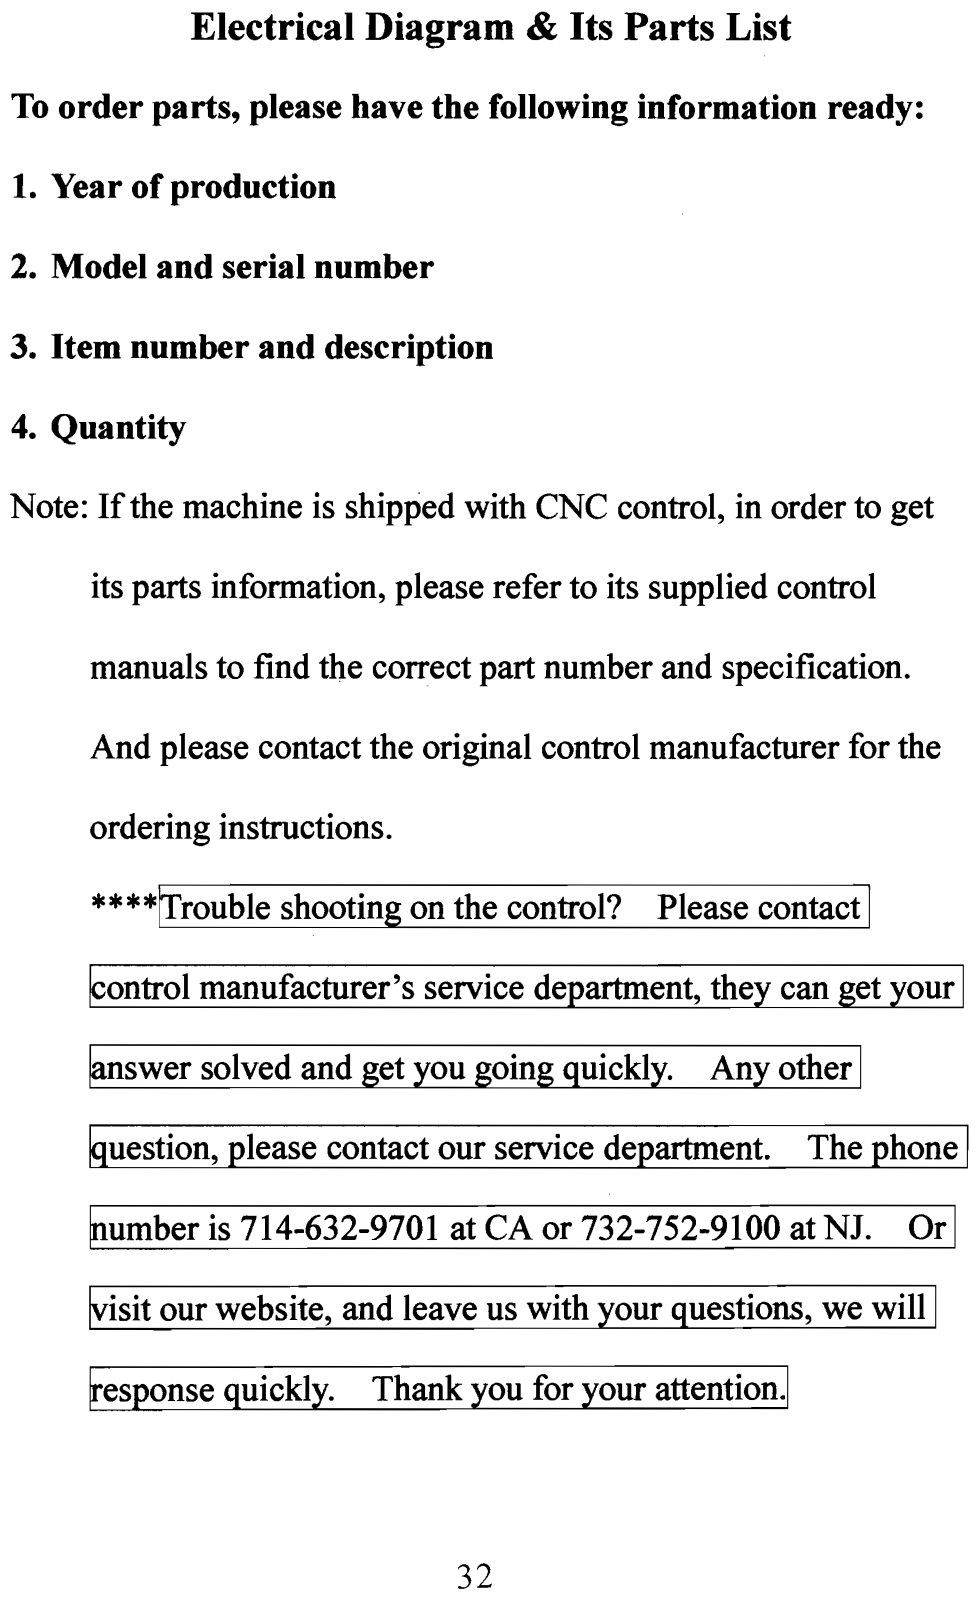 acer EMC-2240A Parts List